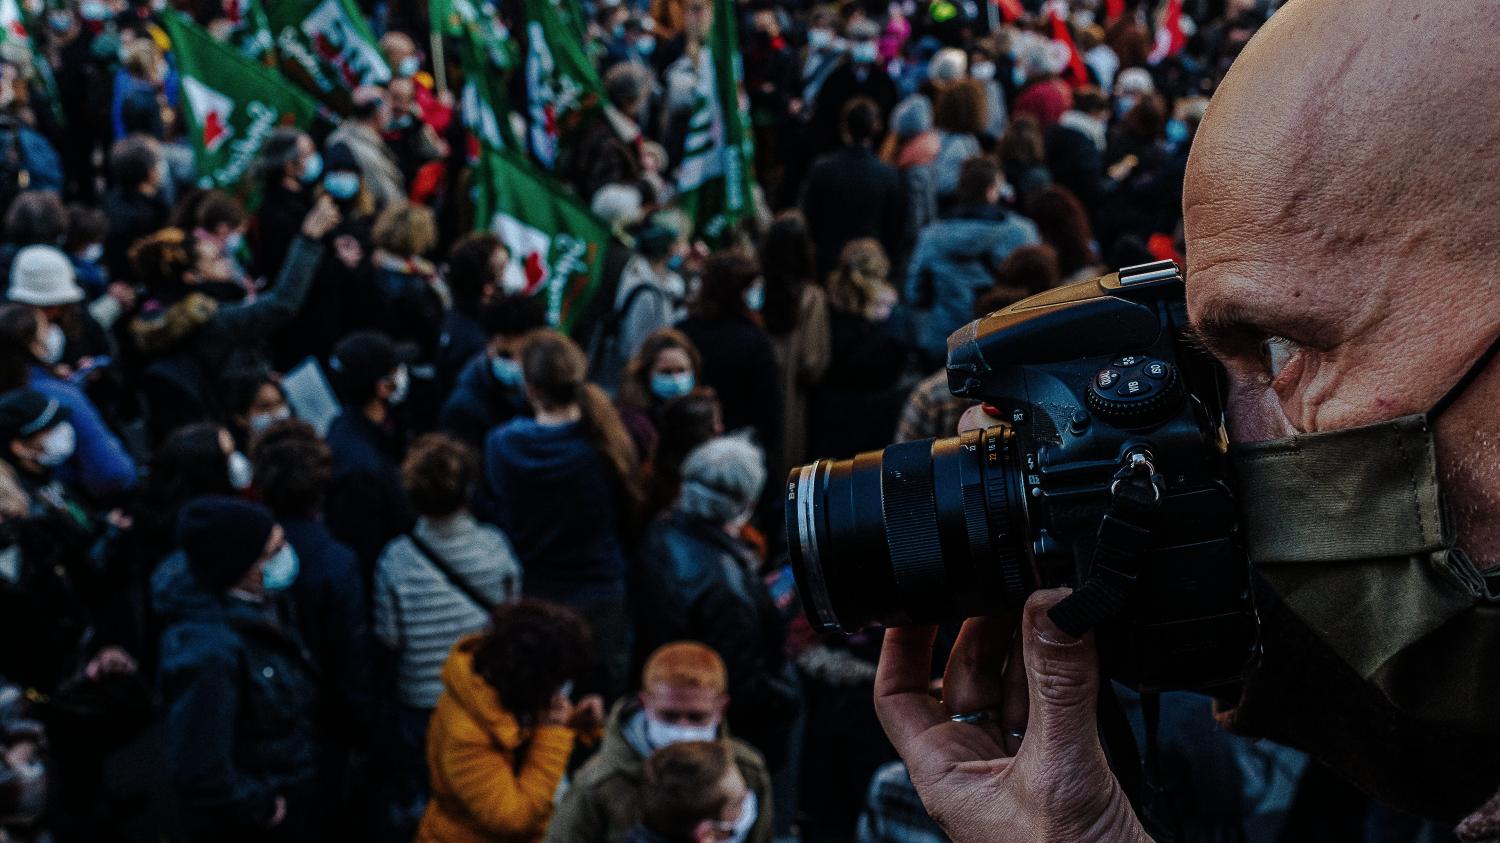 "La liberté de filmer dans une société démocratique, c'est une protection, mais l'usage, c'est ça qui est compliqué"